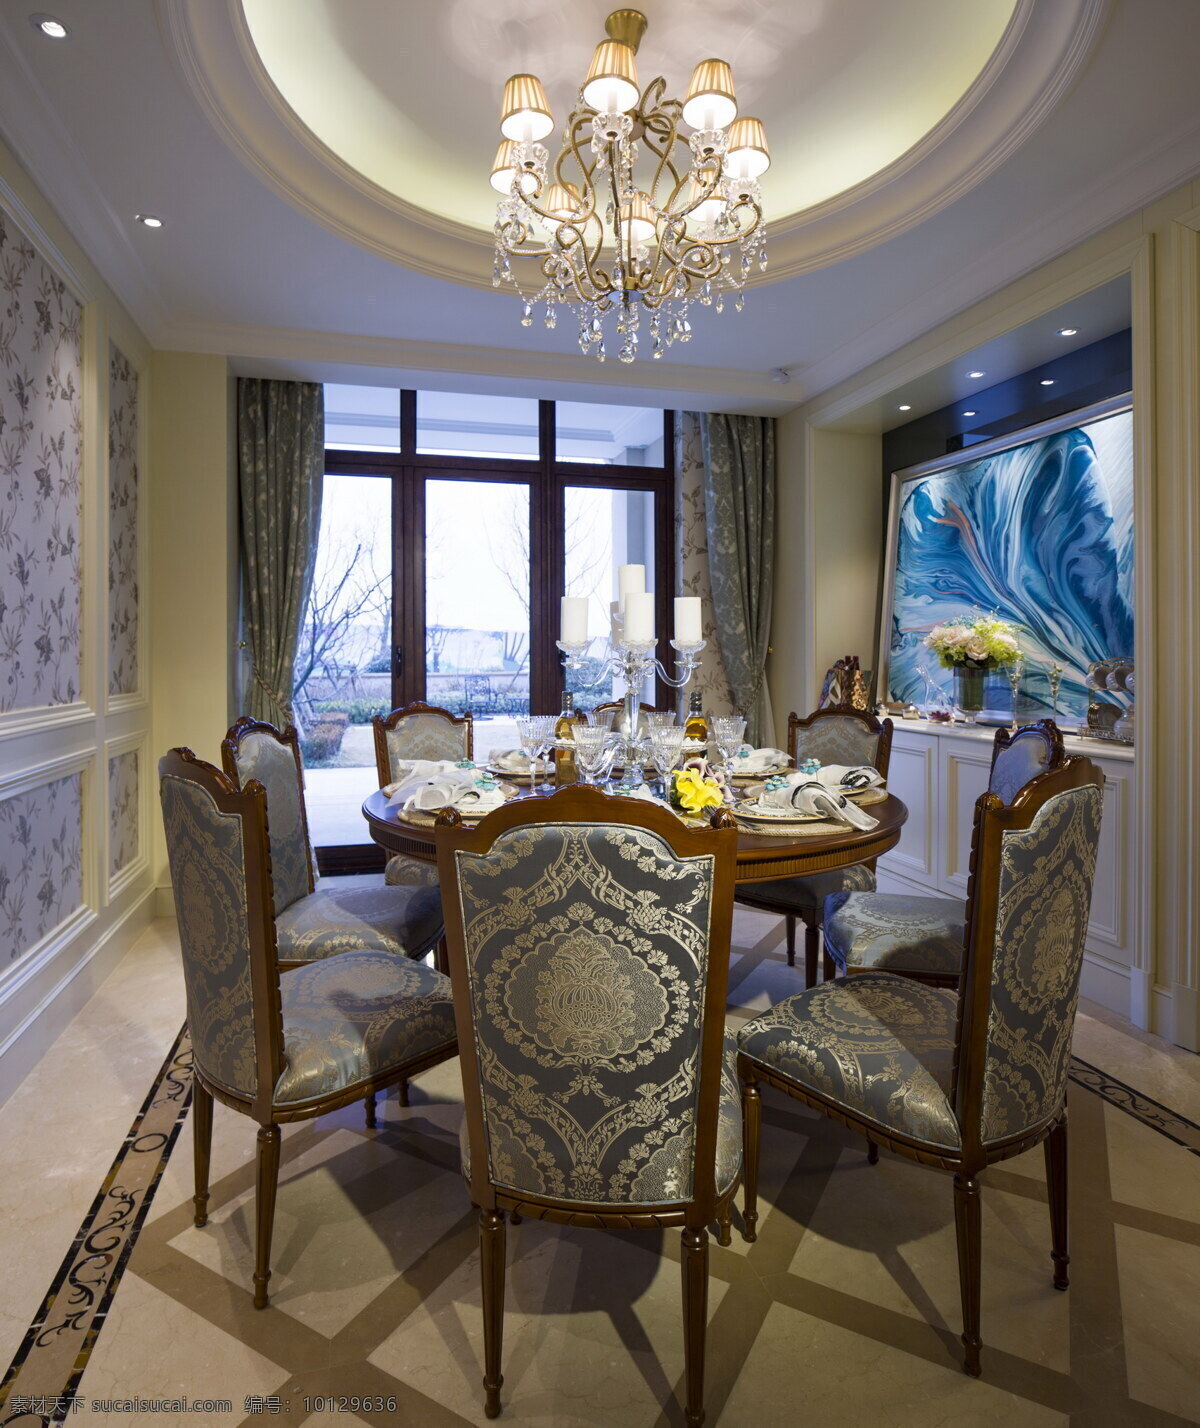 法式 华丽 餐厅 背景 墙 设计图 家居 家居生活 室内设计 装修 室内 家具 装修设计 环境设计 背景墙 蓝色 餐桌